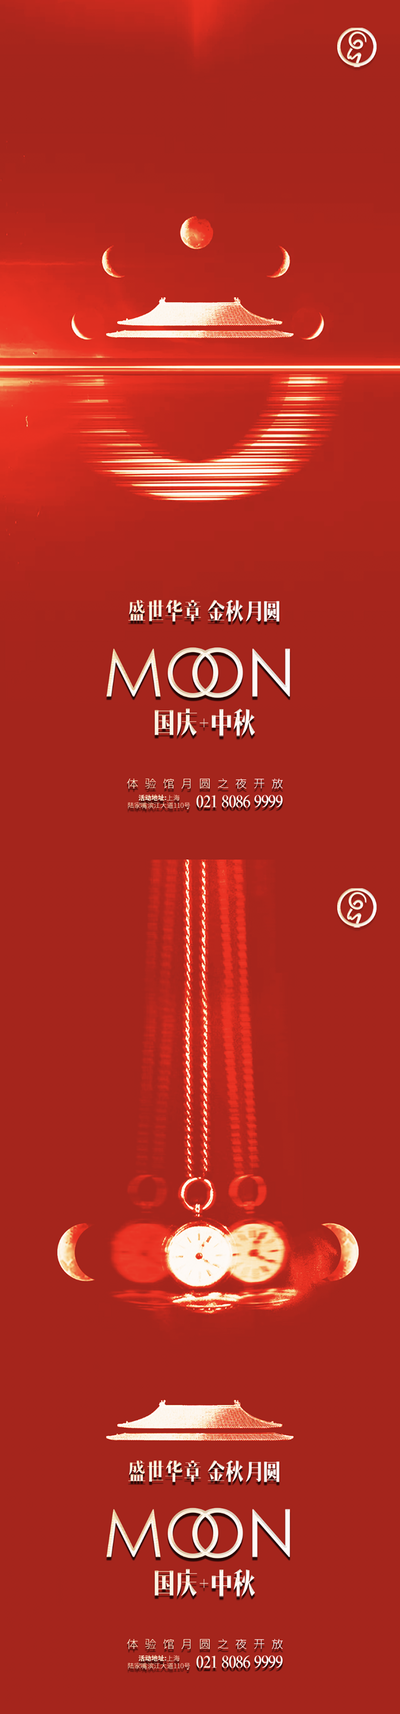 南门网 海报 中国传统节日 中秋 国庆 月亮 红色